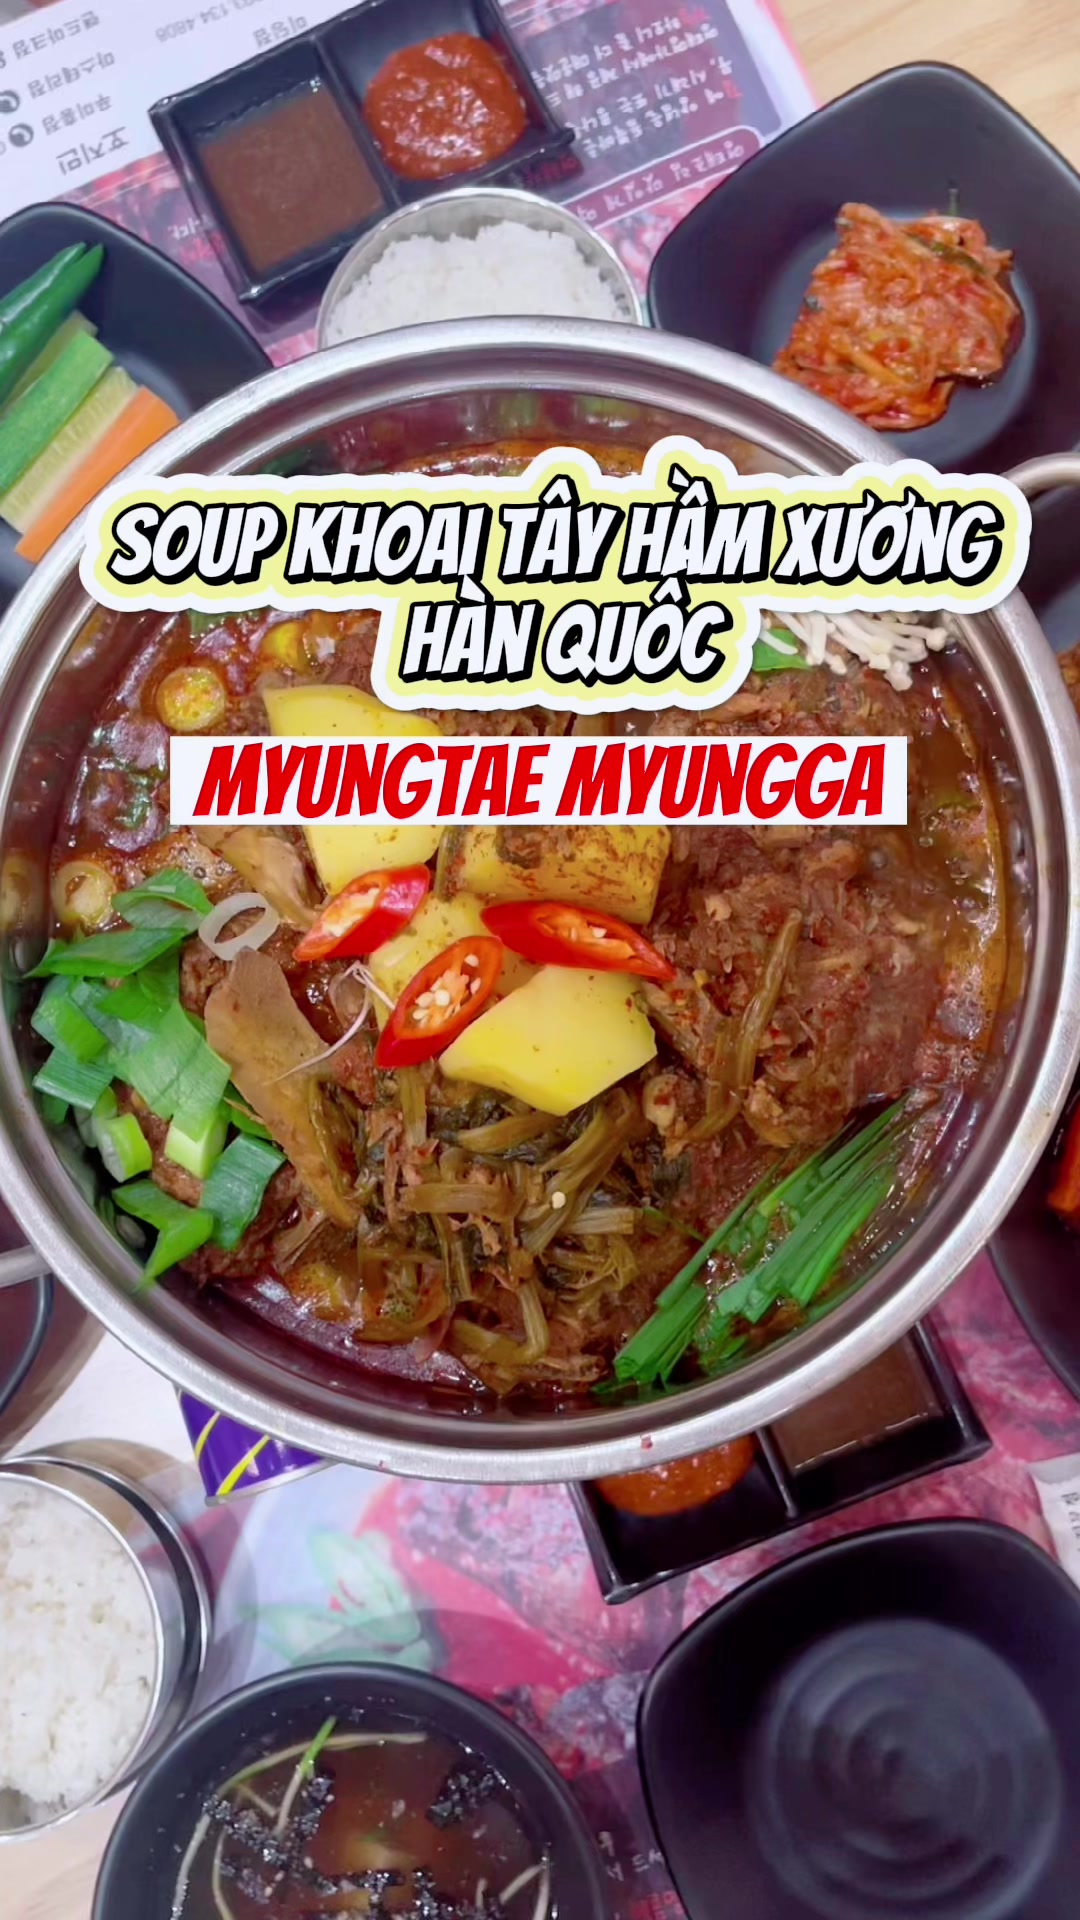 @Soup khoai tây hầm xương chuẩn vị Hàn tại Sài Gòn #soup #kor...